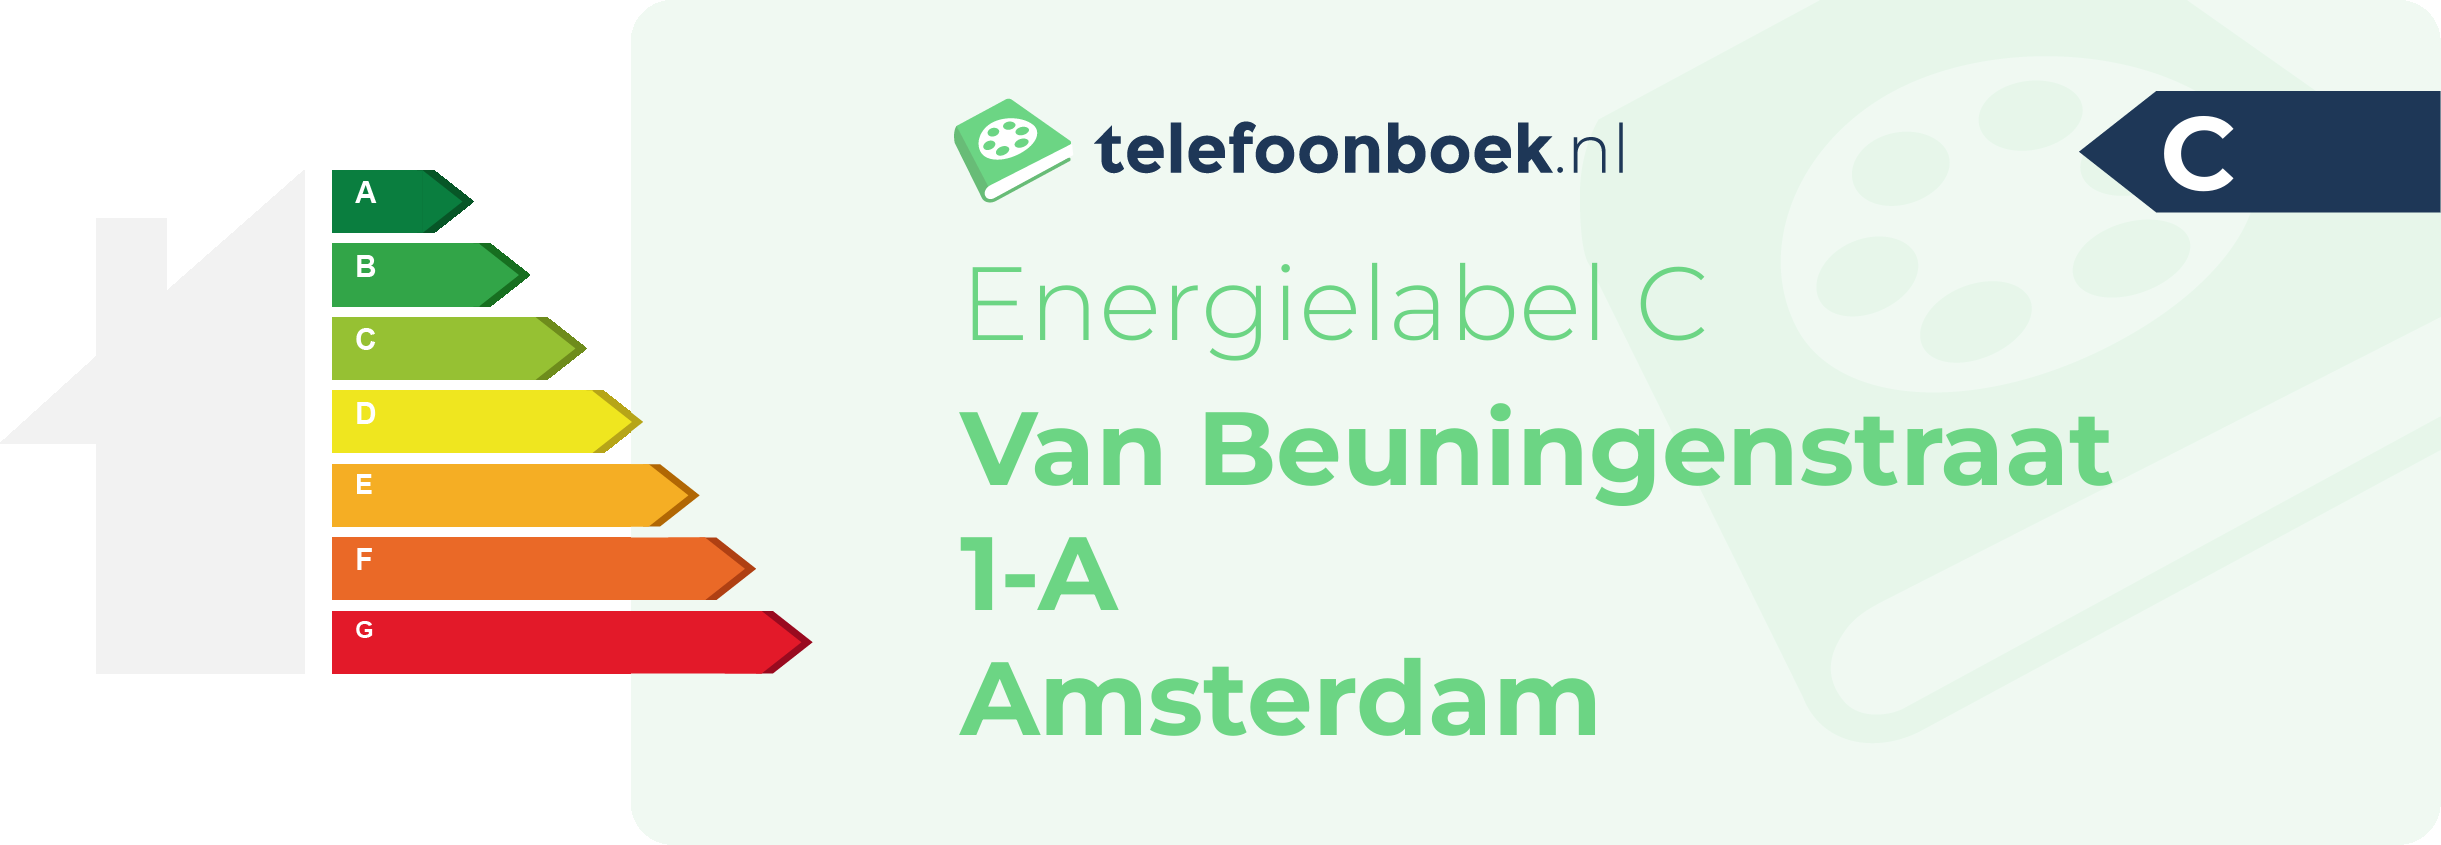 Energielabel Van Beuningenstraat 1-A Amsterdam